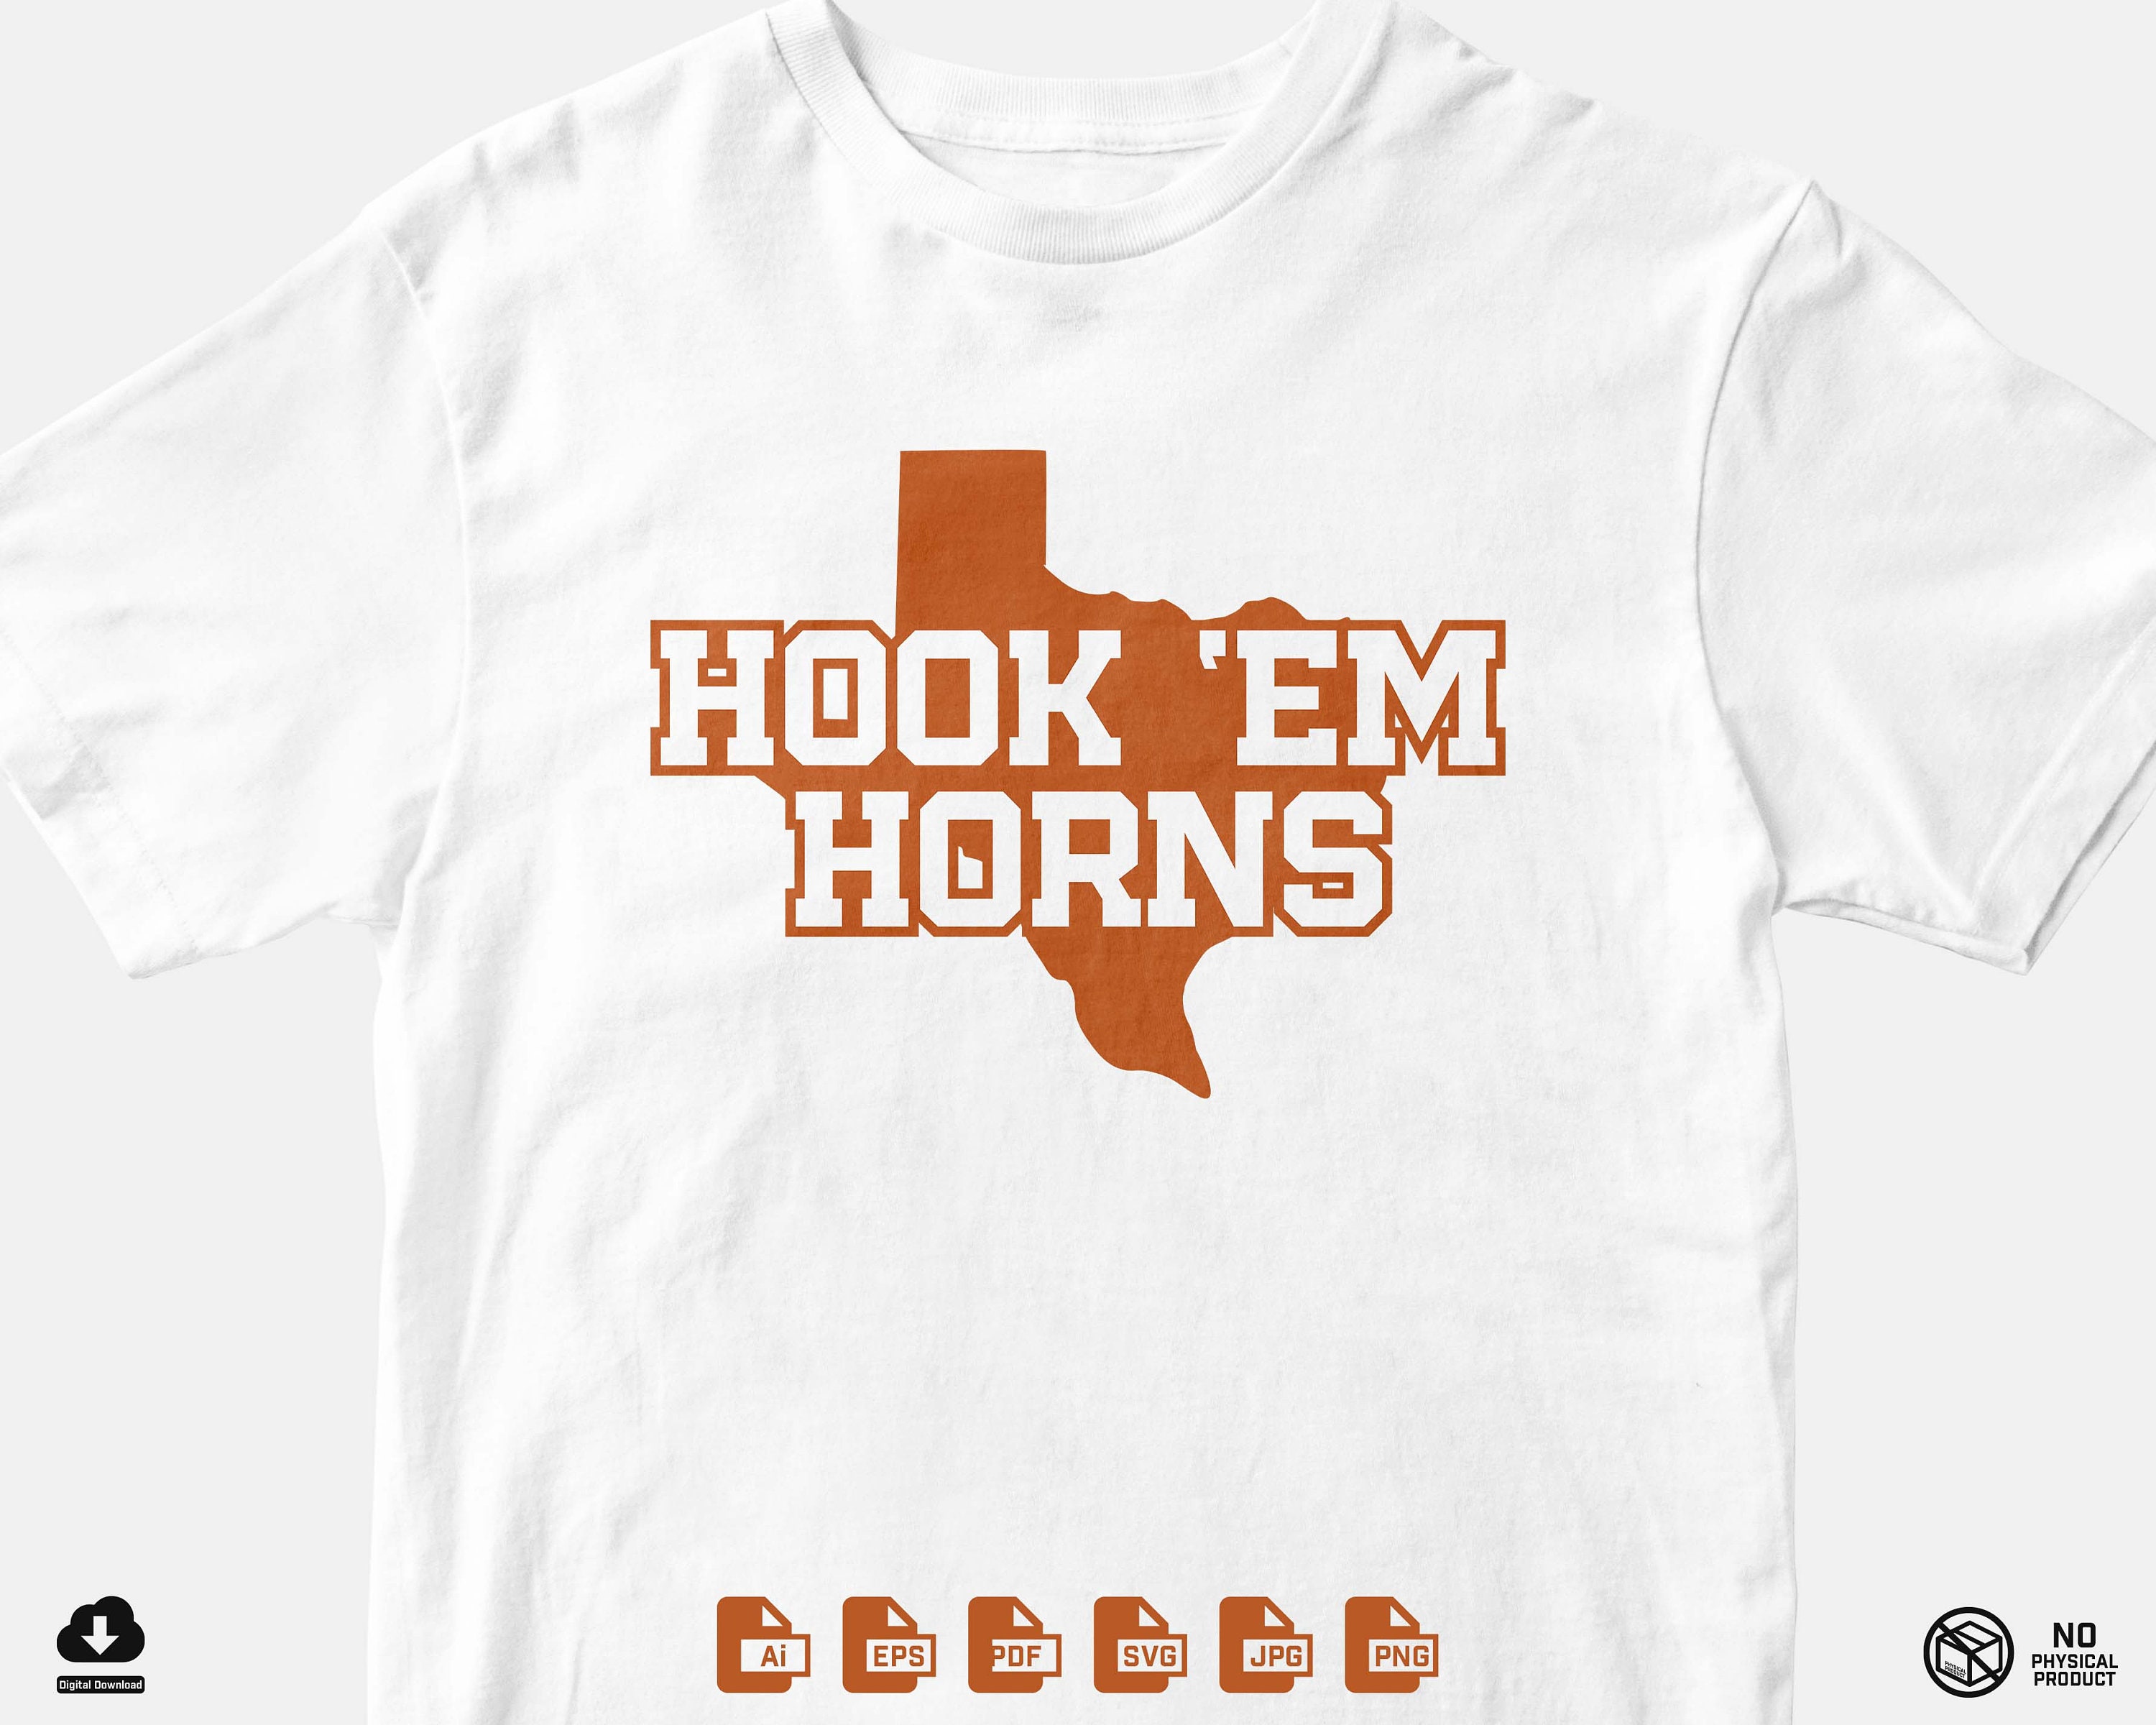 HOOK'EM Unisex T-shirt, Mirror Font, Retro Shirt, University Bulk Shirt,  Longhorn Dress, Horns T-shirt, Football Shirt, Game Day Outfit 